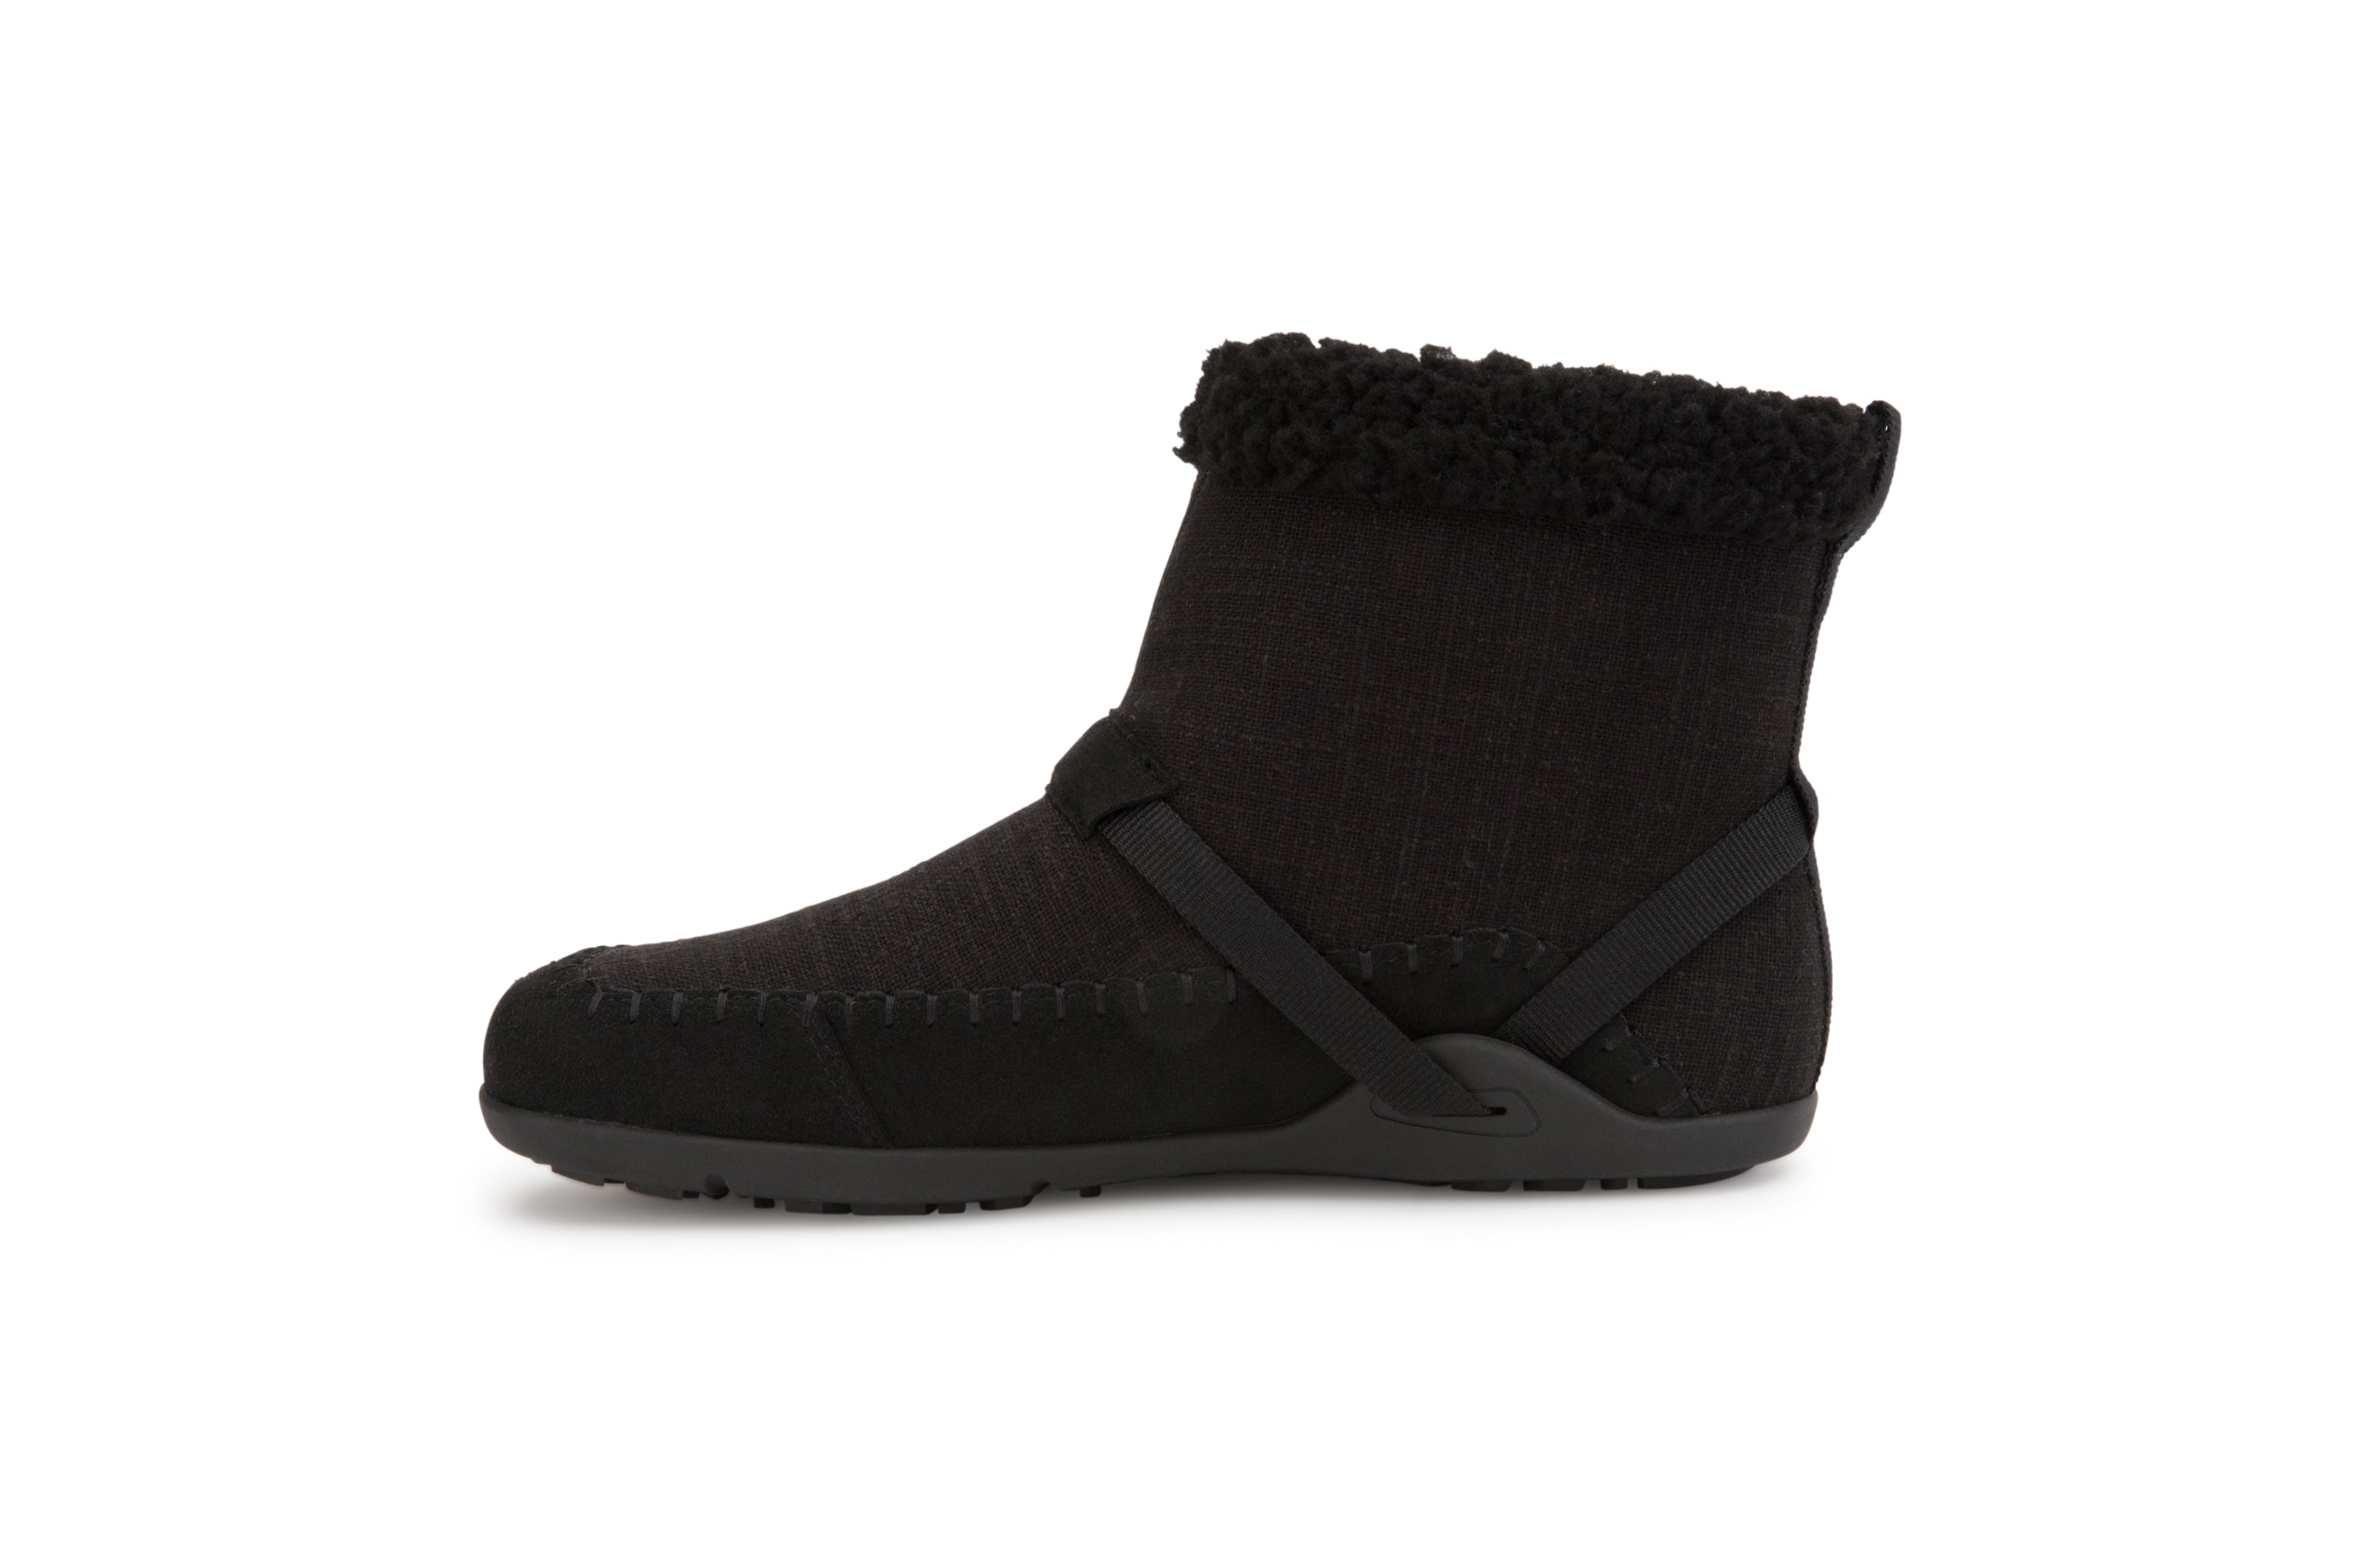 Xero Shoes Ashland barfods kanvas støvler til kvinder i farven black, inderside